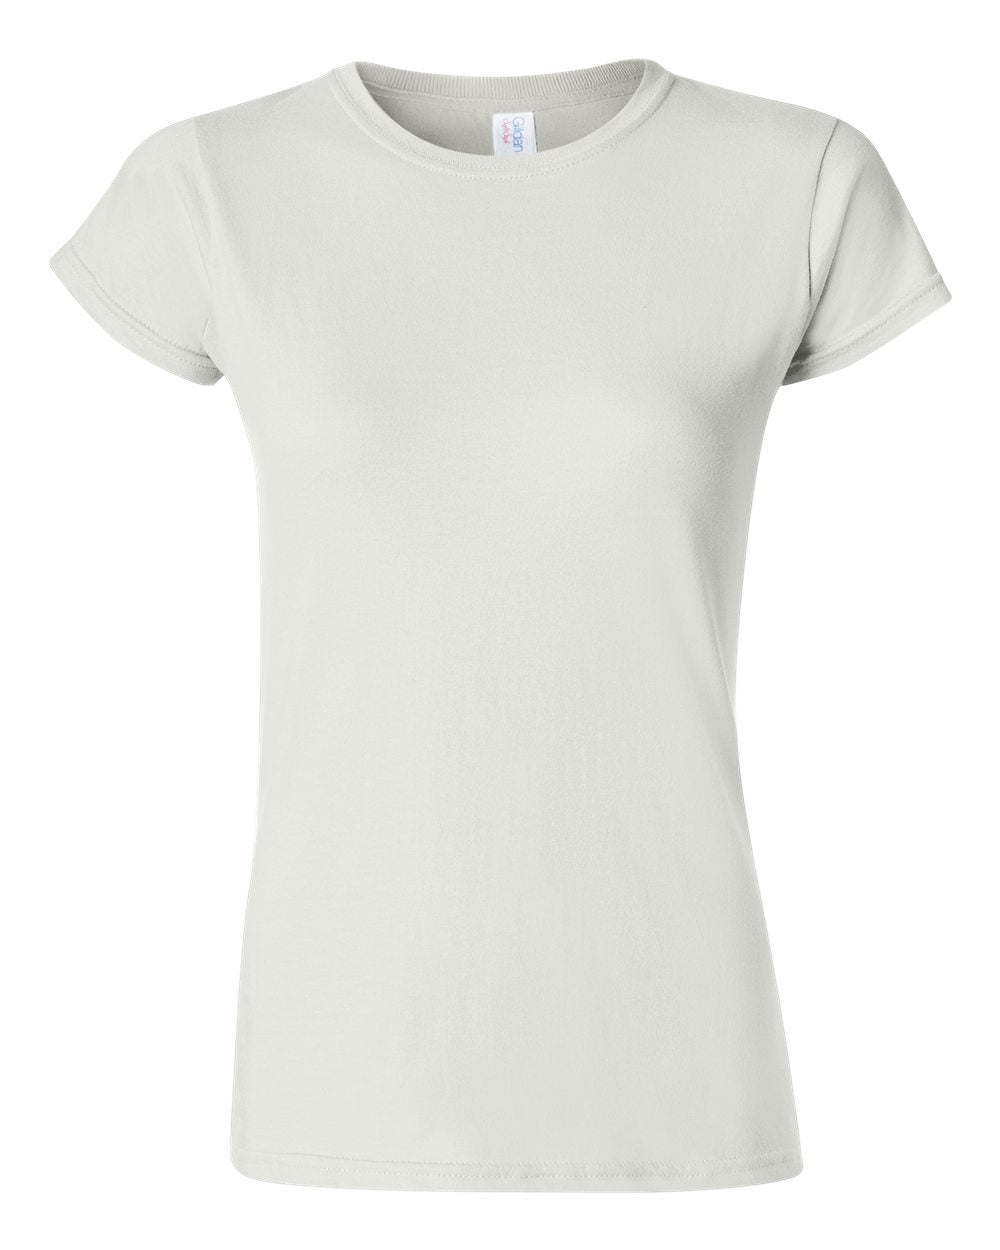 Gildan Softstyle Women's T-Shirt